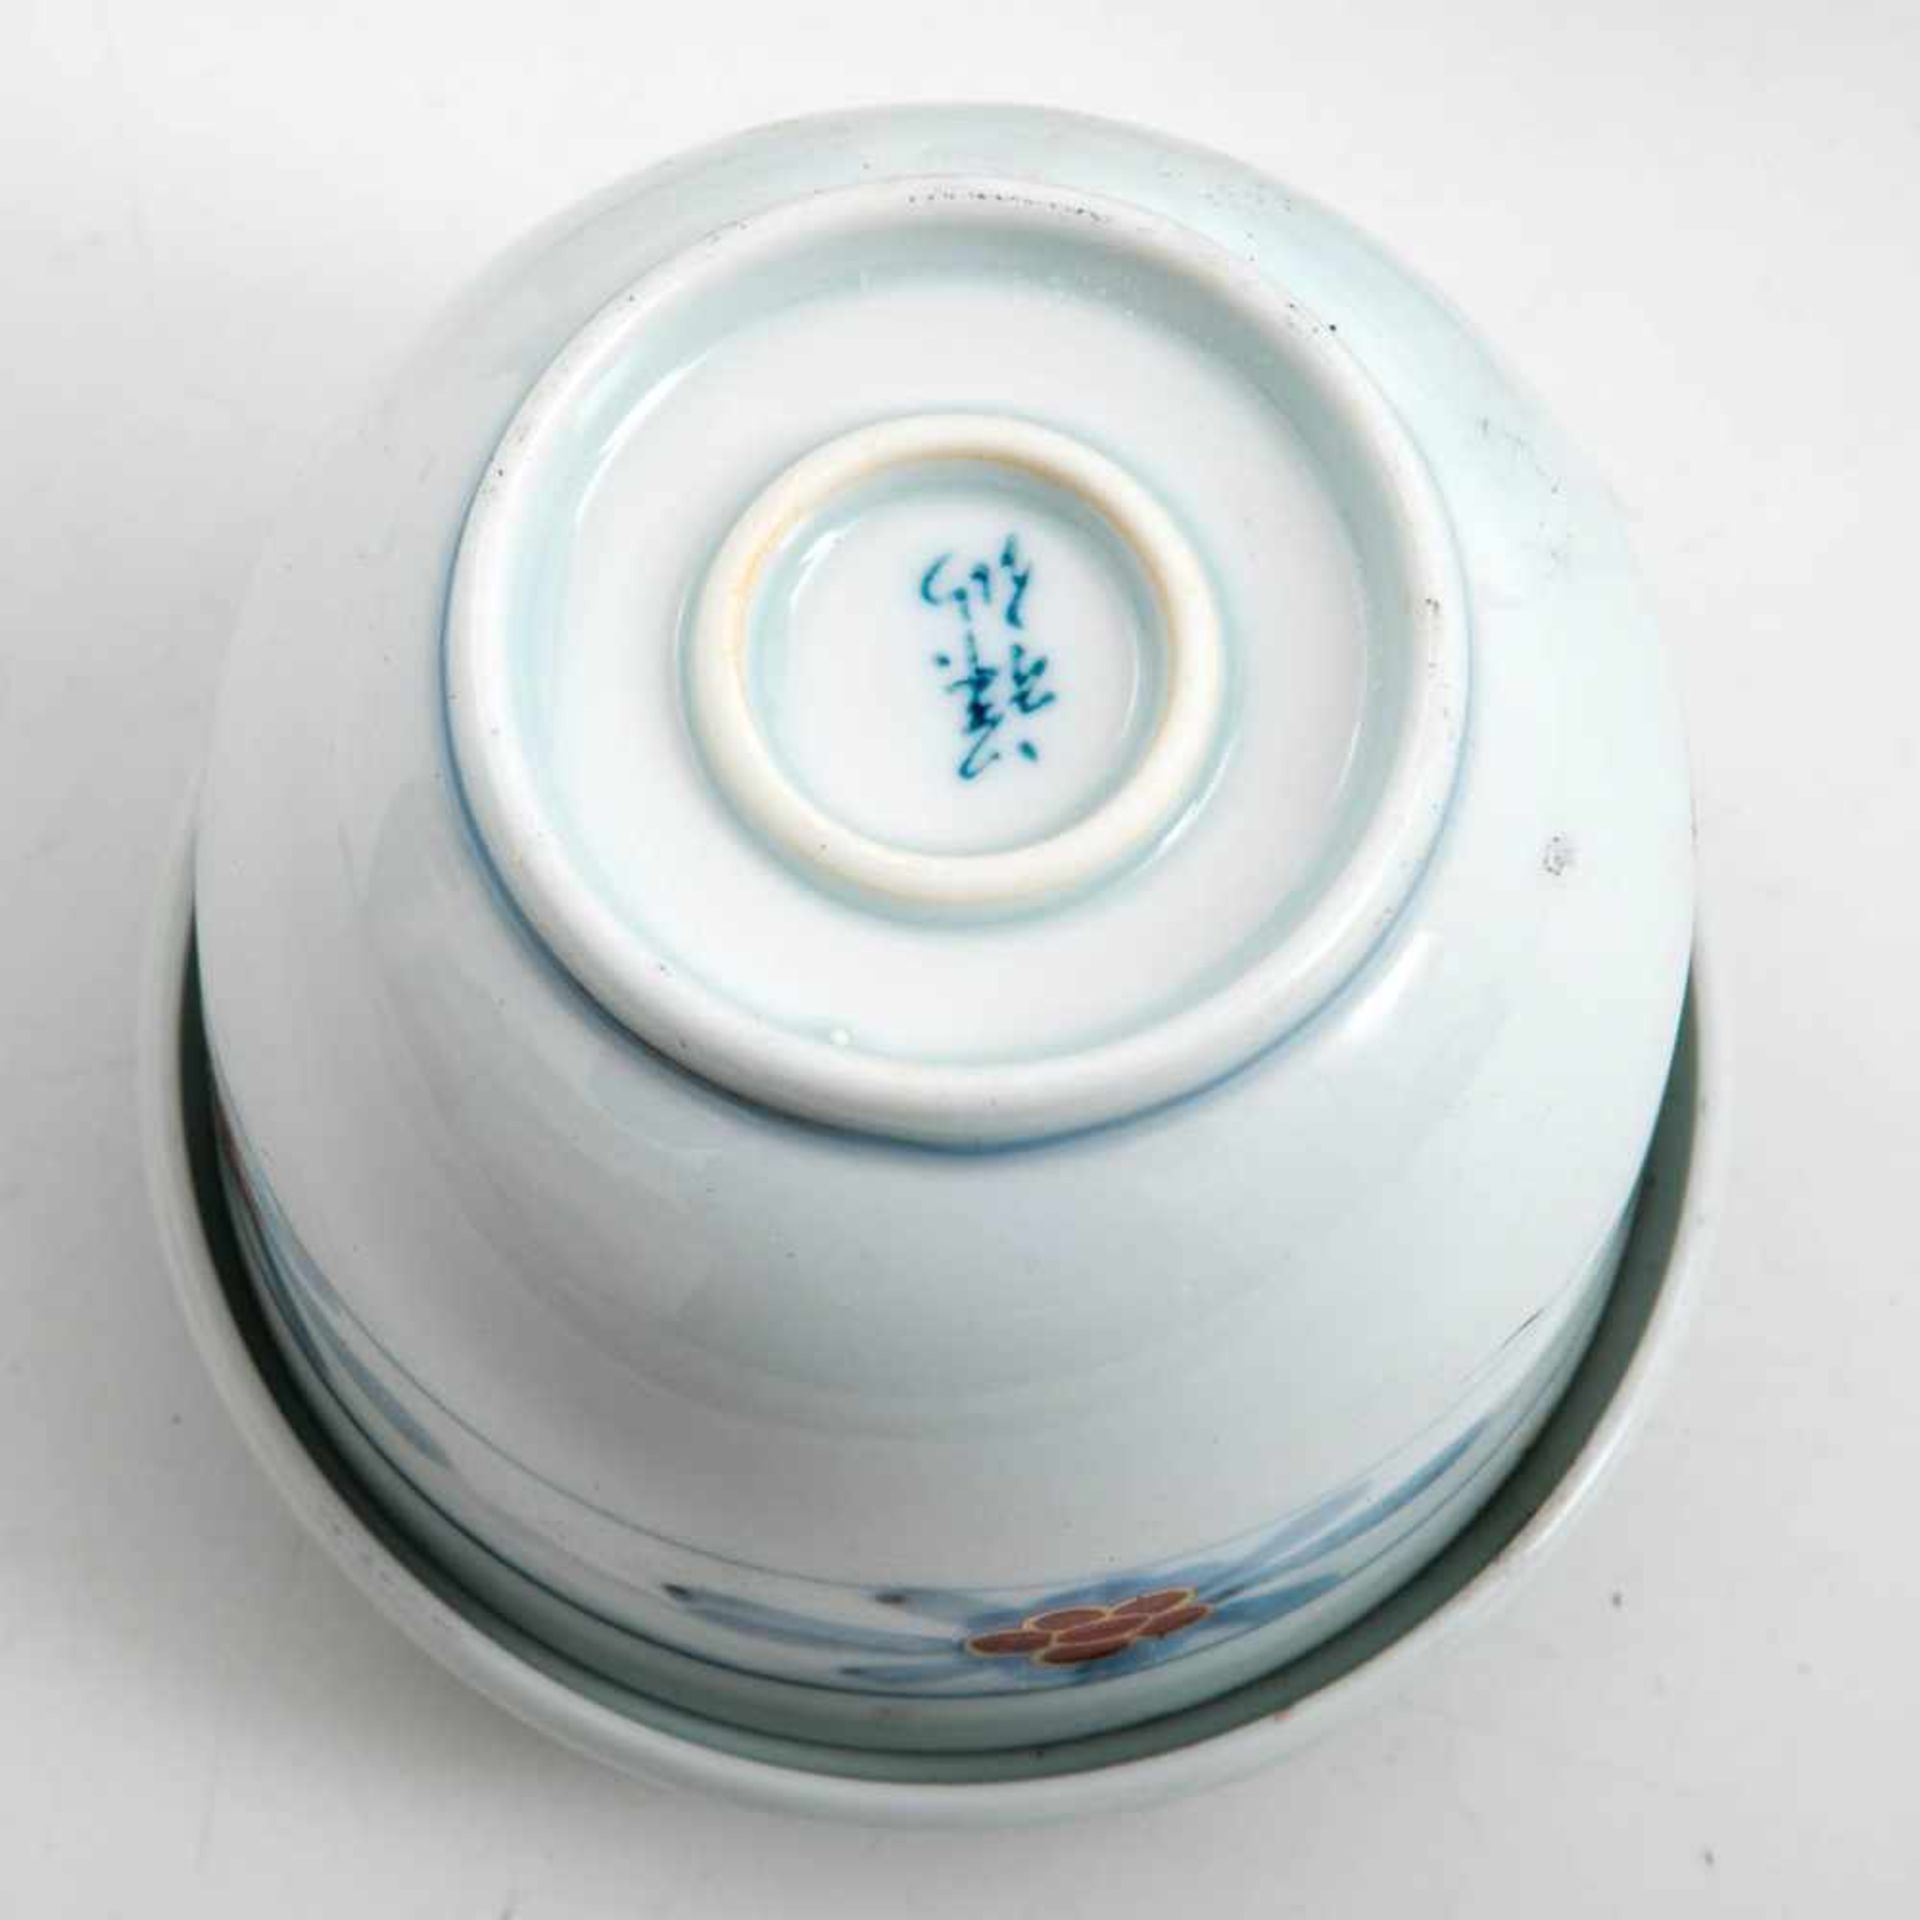 5 Teeschalen, Japan um 1900Porzellan, unter der Glasur blau mit Blattrosette, auf der Glasur mit - Bild 2 aus 2